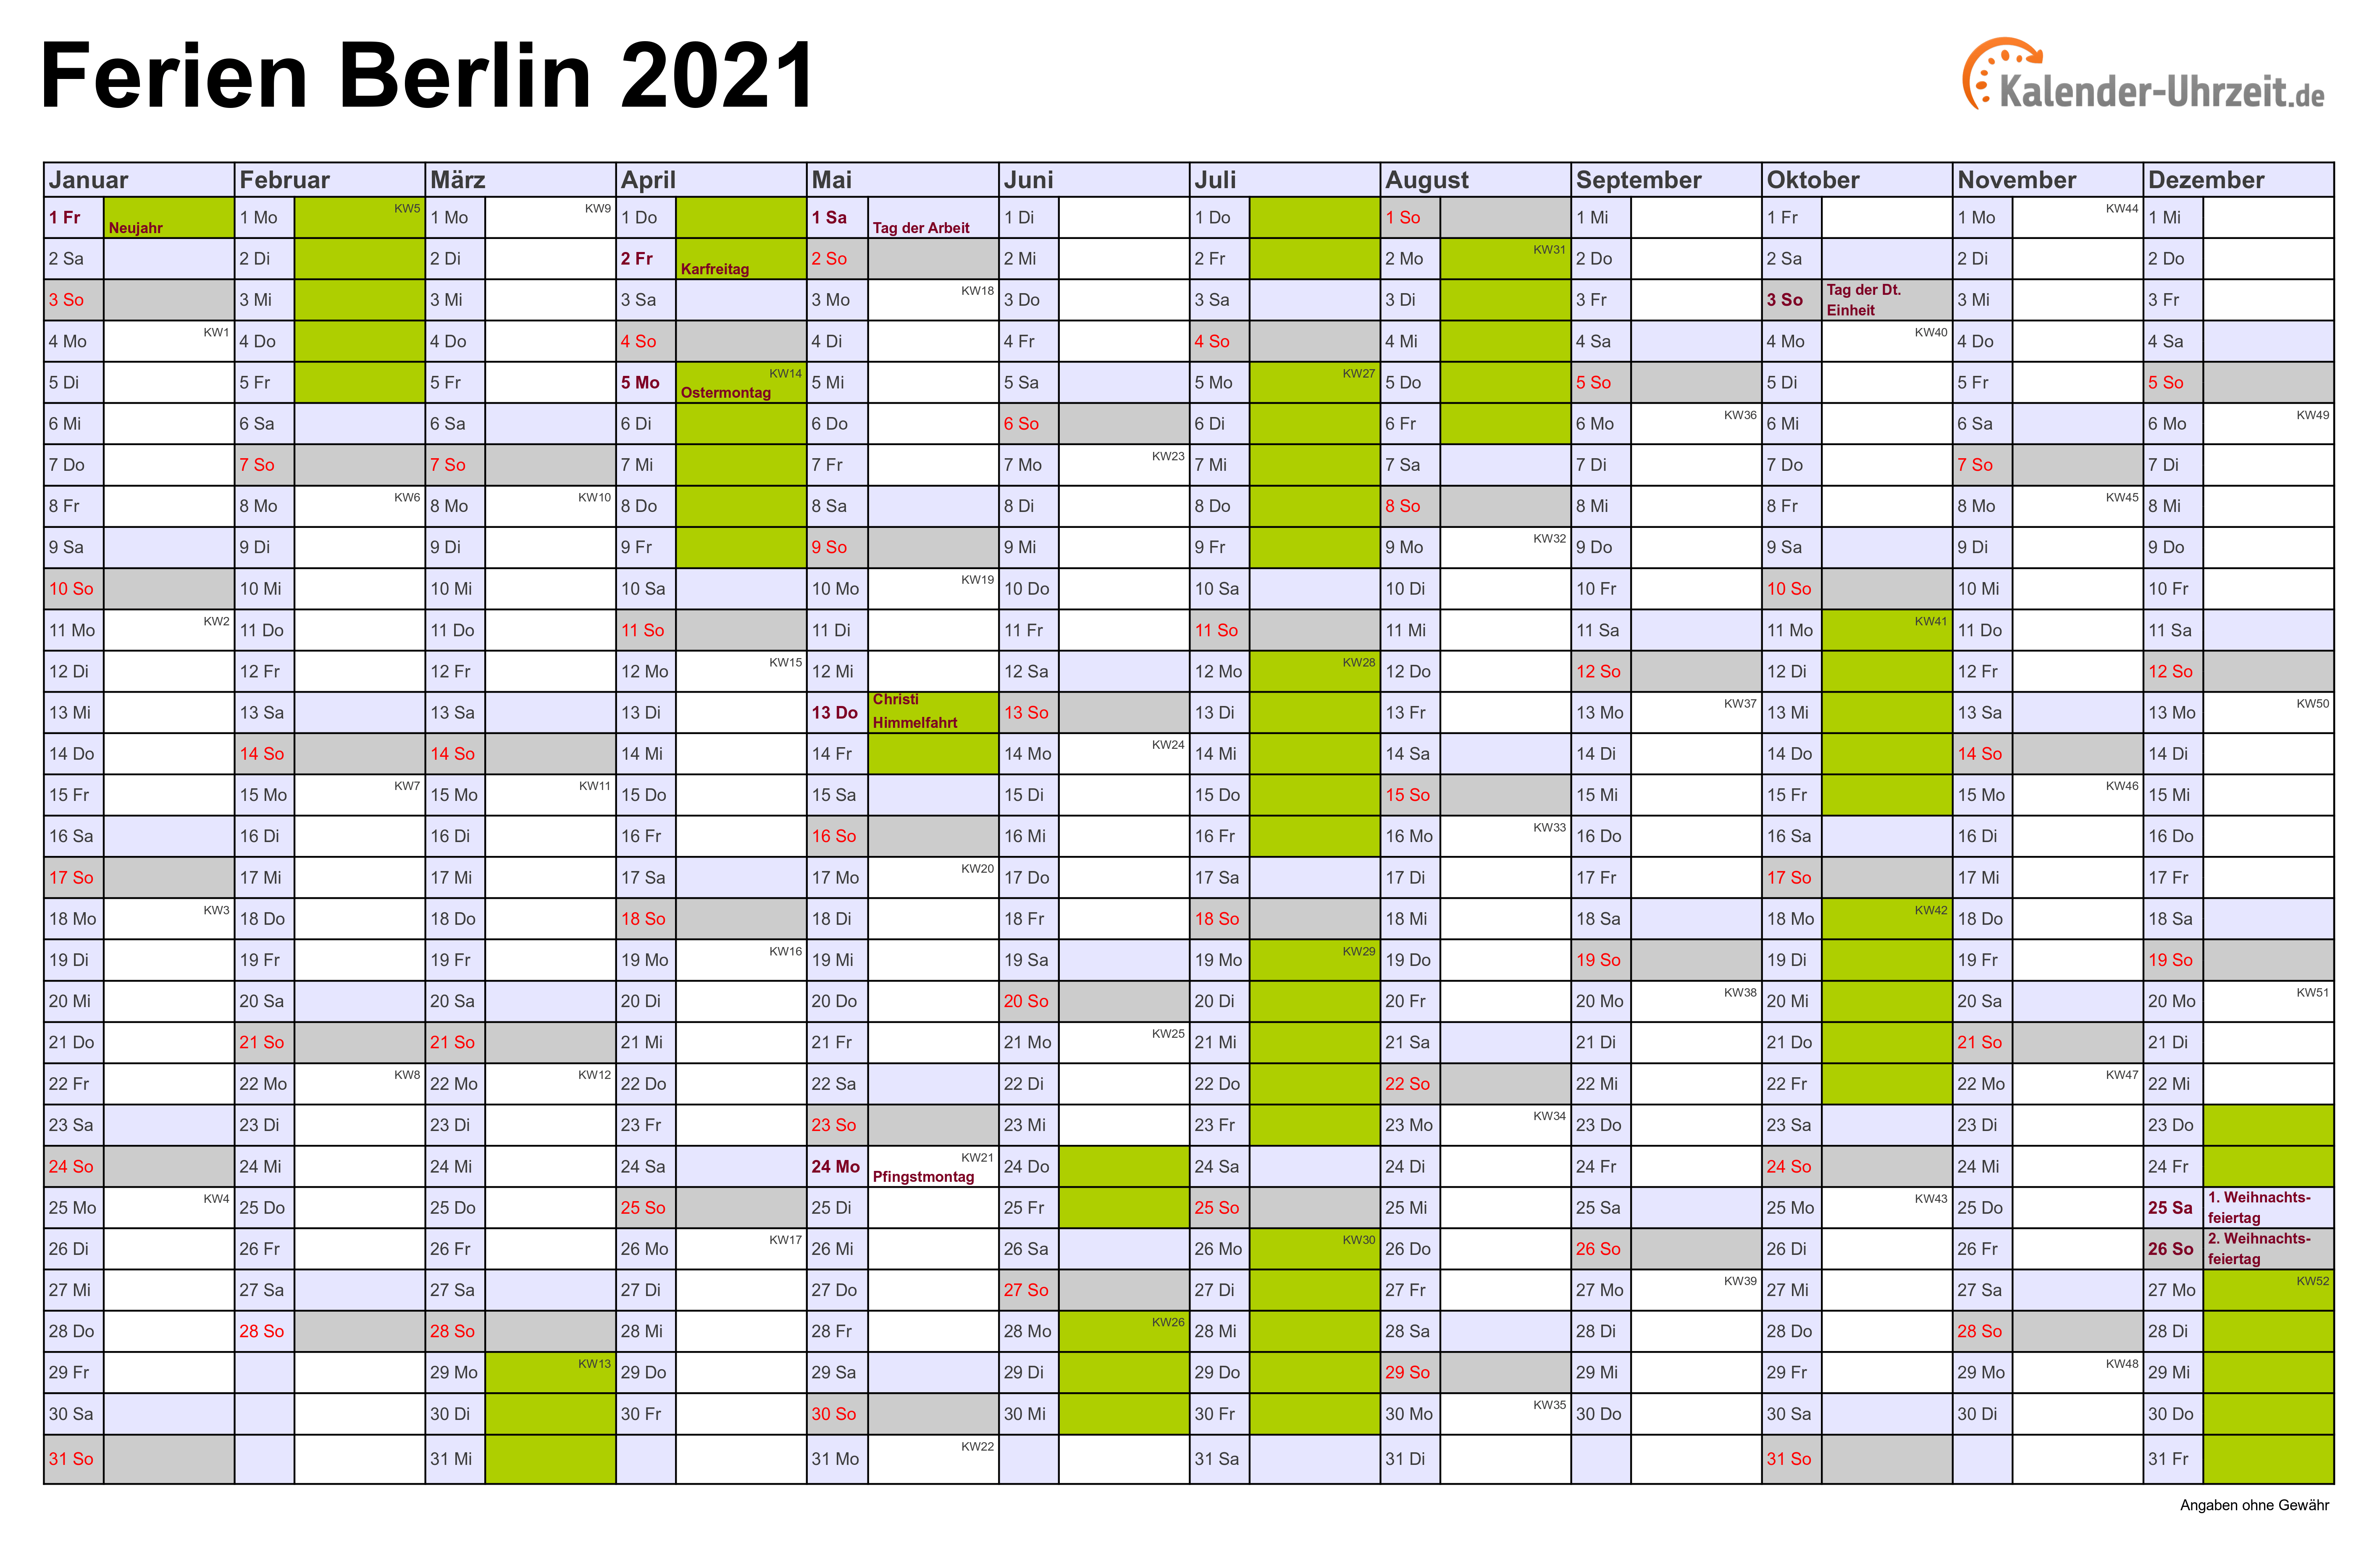 Ferienkalender 2021 Berlin